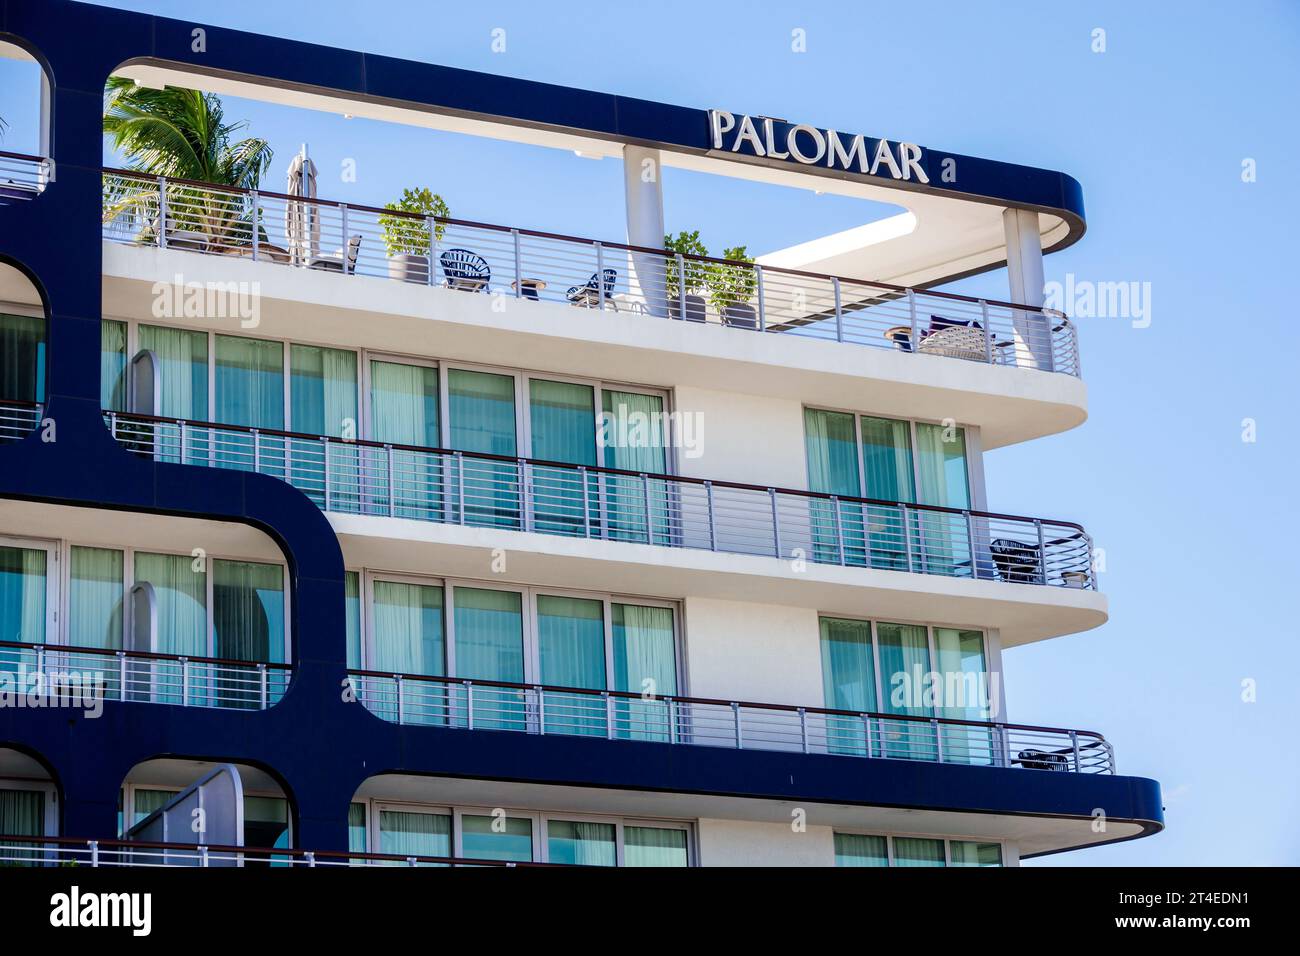 Miami Beach Florida, Außenansicht, Hotel vor dem Eingang des Gebäudes, Kimpton Hotel Palomar South Beach Schild, Hotels Motels Unternehmen Stockfoto